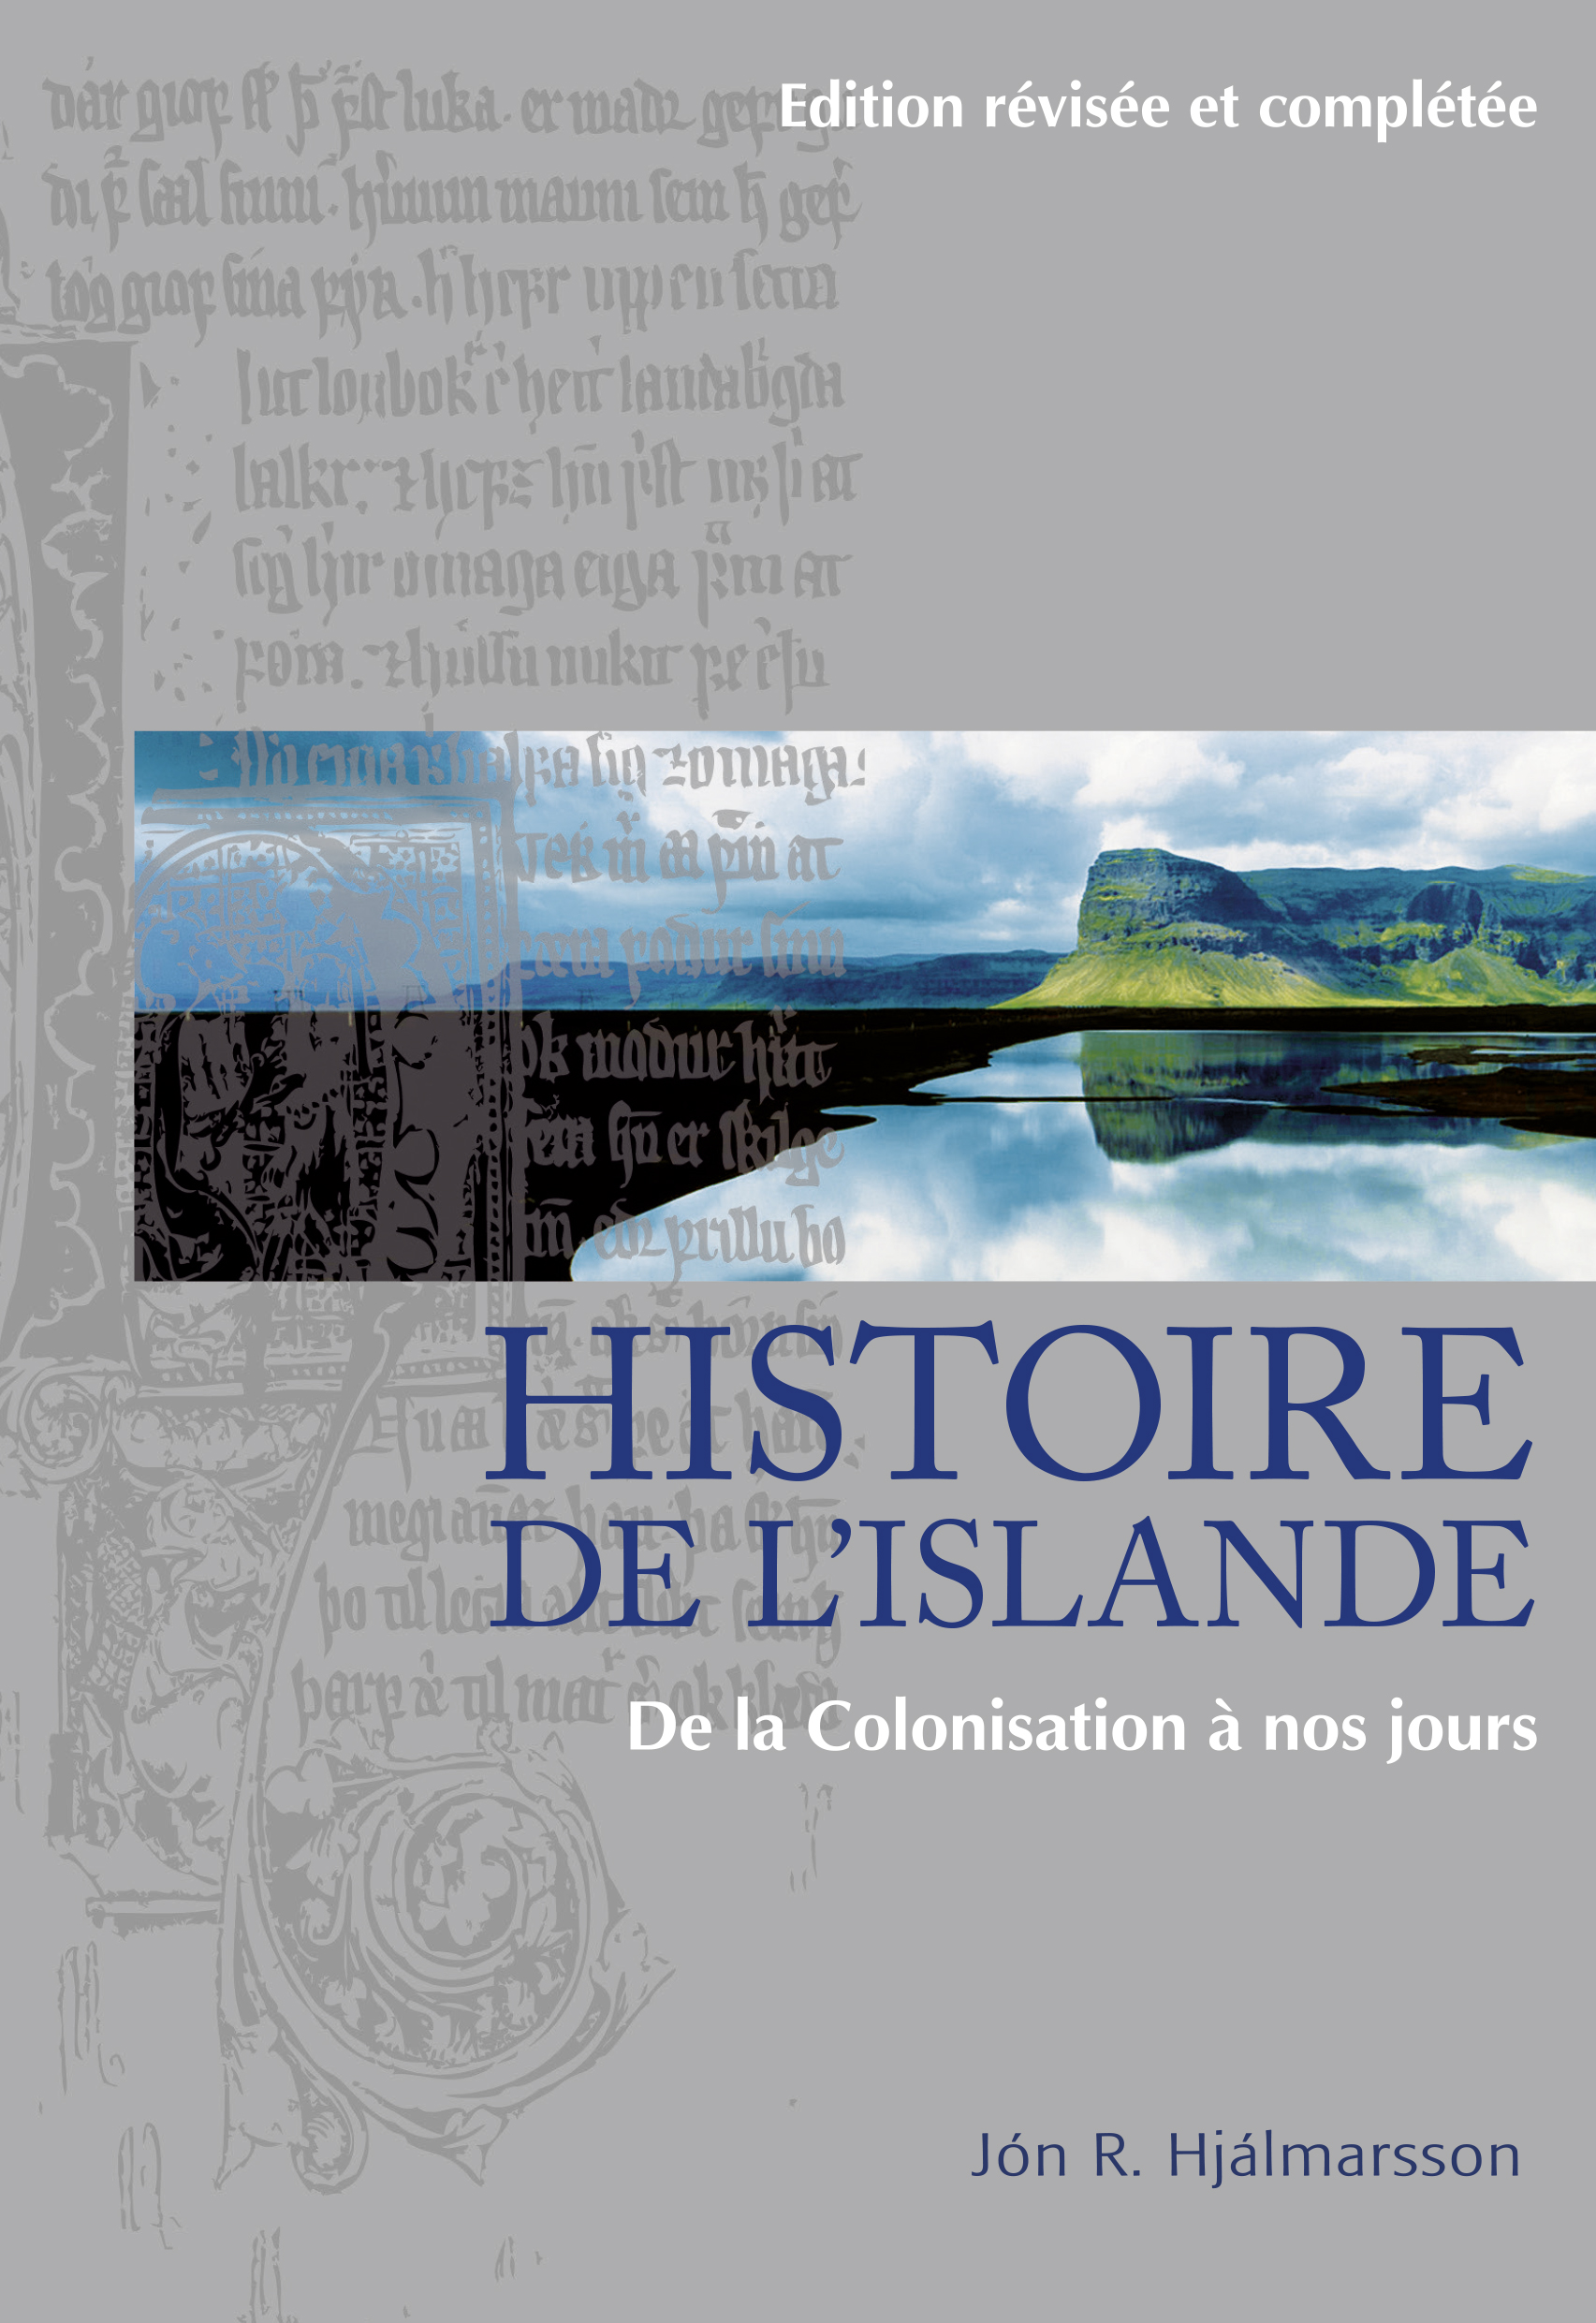 Histoire de L'Islande - De la Colonisation à nos jours